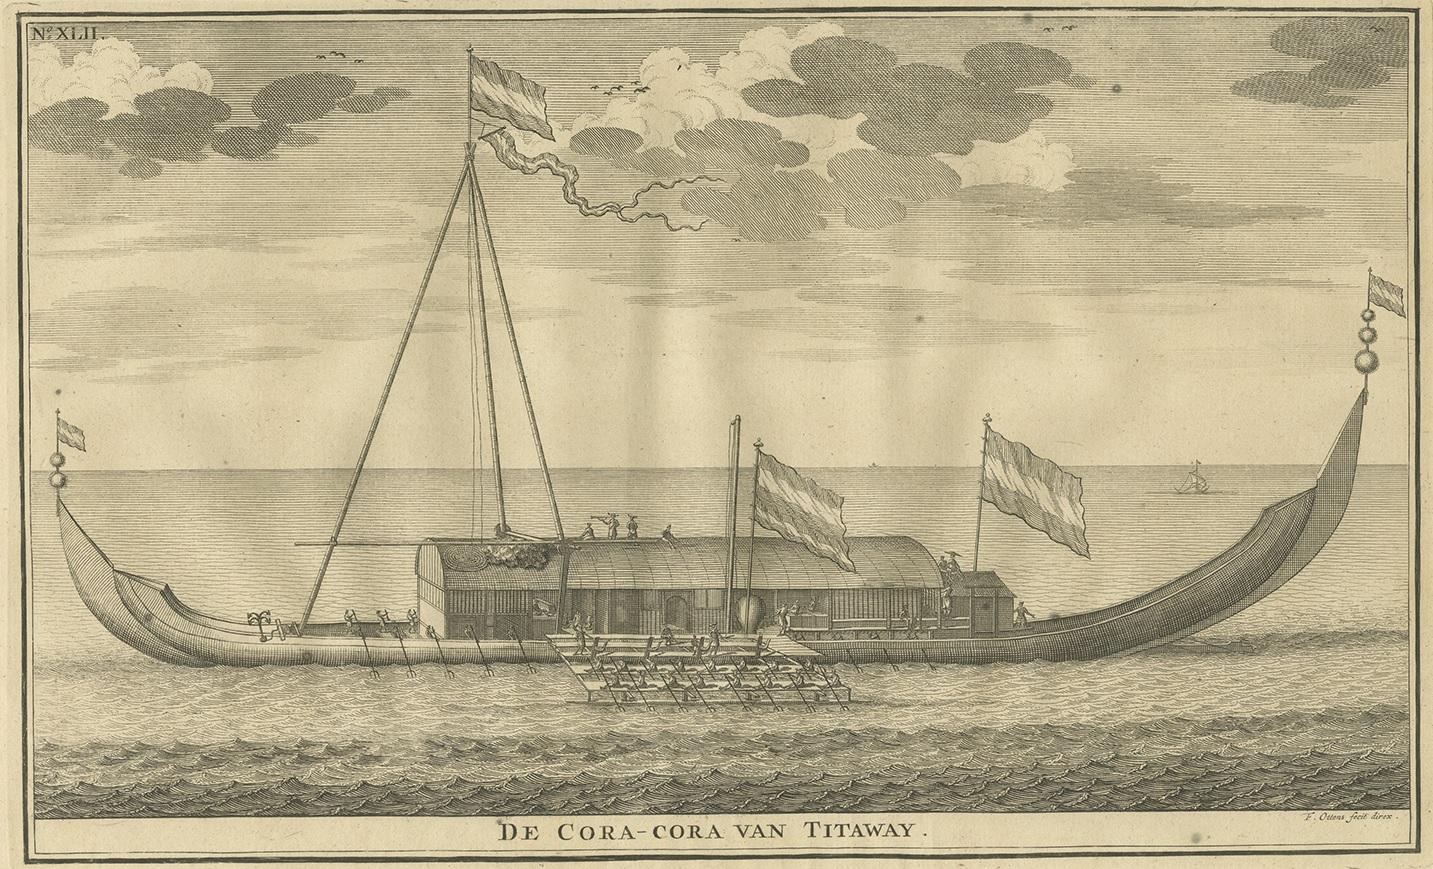 Antique print titled 'De Cora-Cora van Titaway'. This is an original copper engraving of the Coracora fleet from Titaway. This print originates from 'Oud en Nieuw Oost-Indiën' by F. Valentijn.